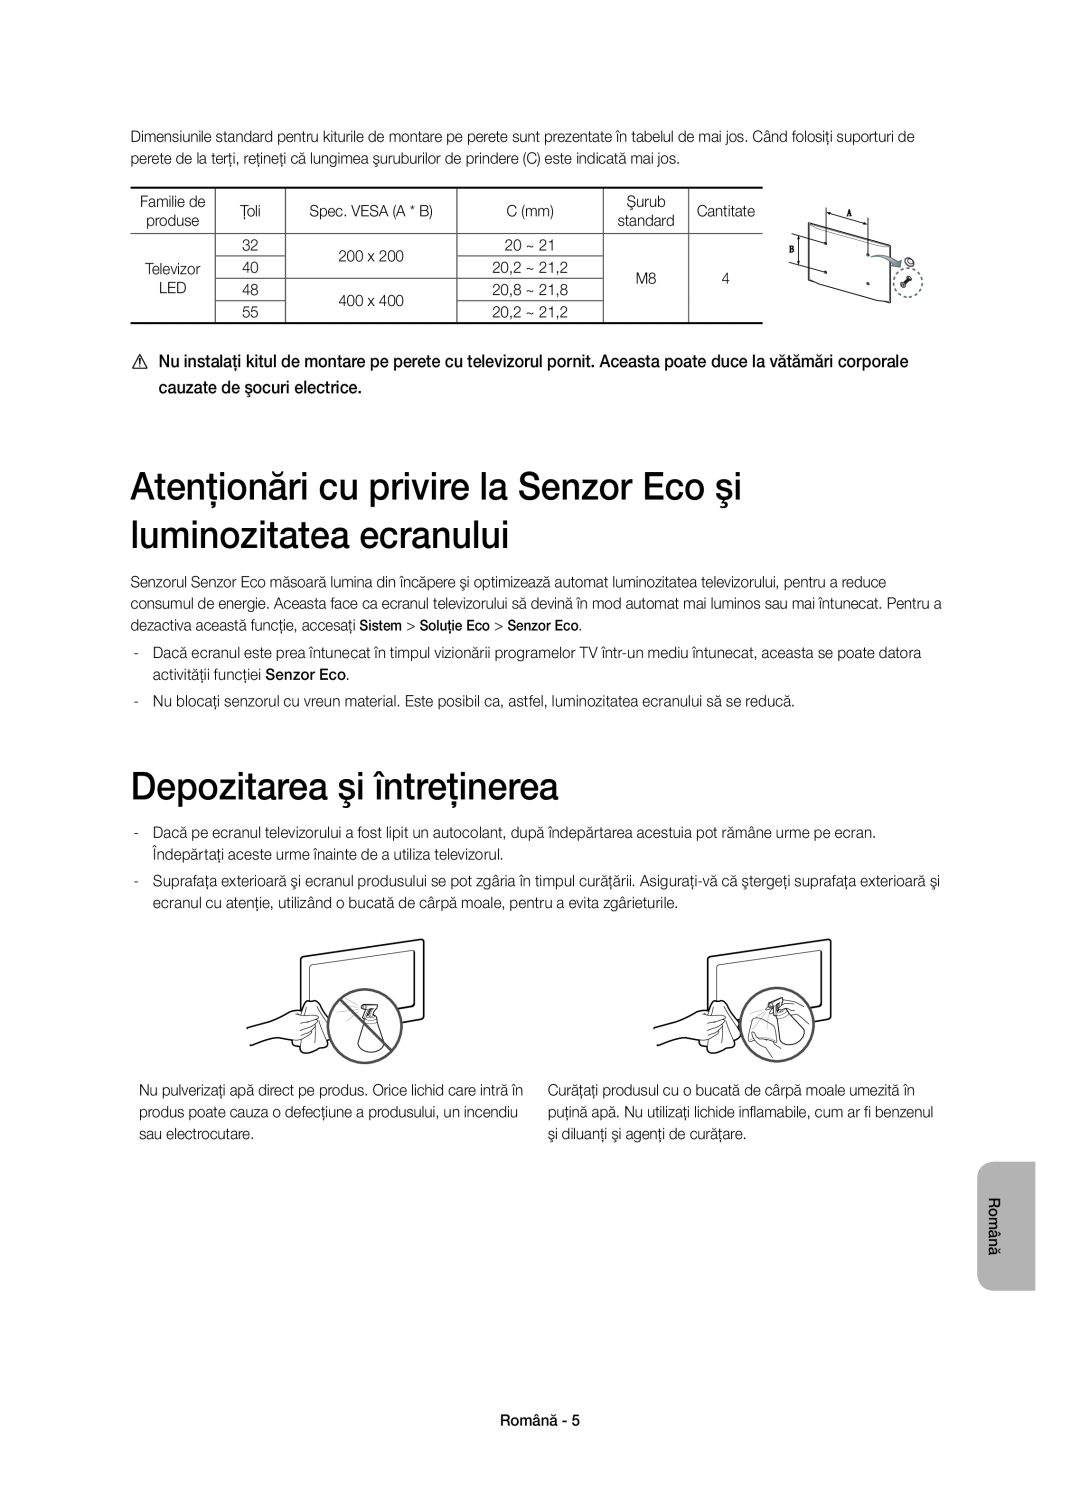 Samsung UE32H6410SUXXH manual Atenţionări cu privire la Senzor Eco şi luminozitatea ecranului, Depozitarea şi întreţinerea 